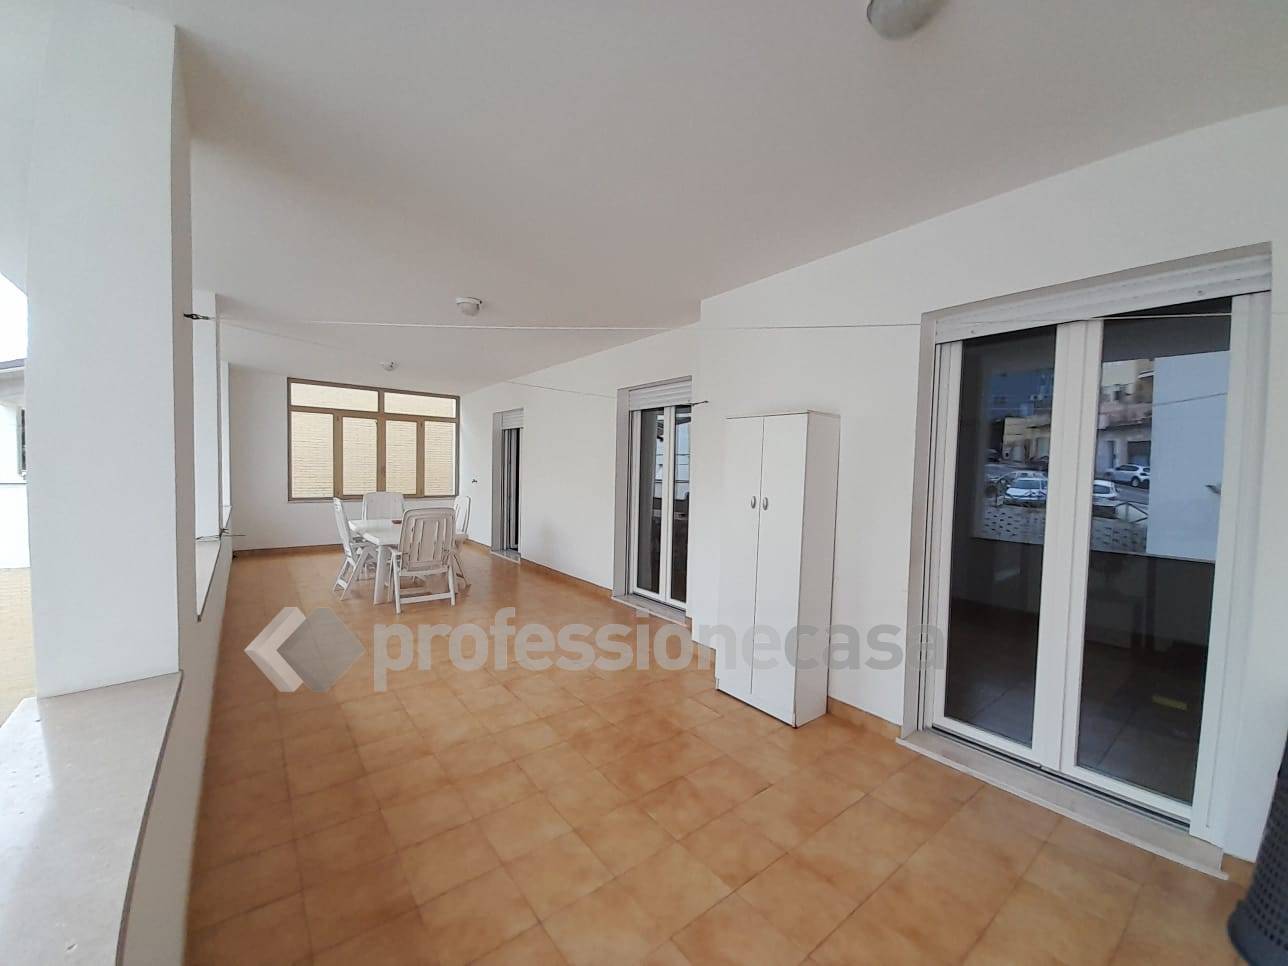 Appartamento in vendita a Porto Sant'Elpidio, 7 locali, zona Località: Centro, prezzo € 215.000 | PortaleAgenzieImmobiliari.it